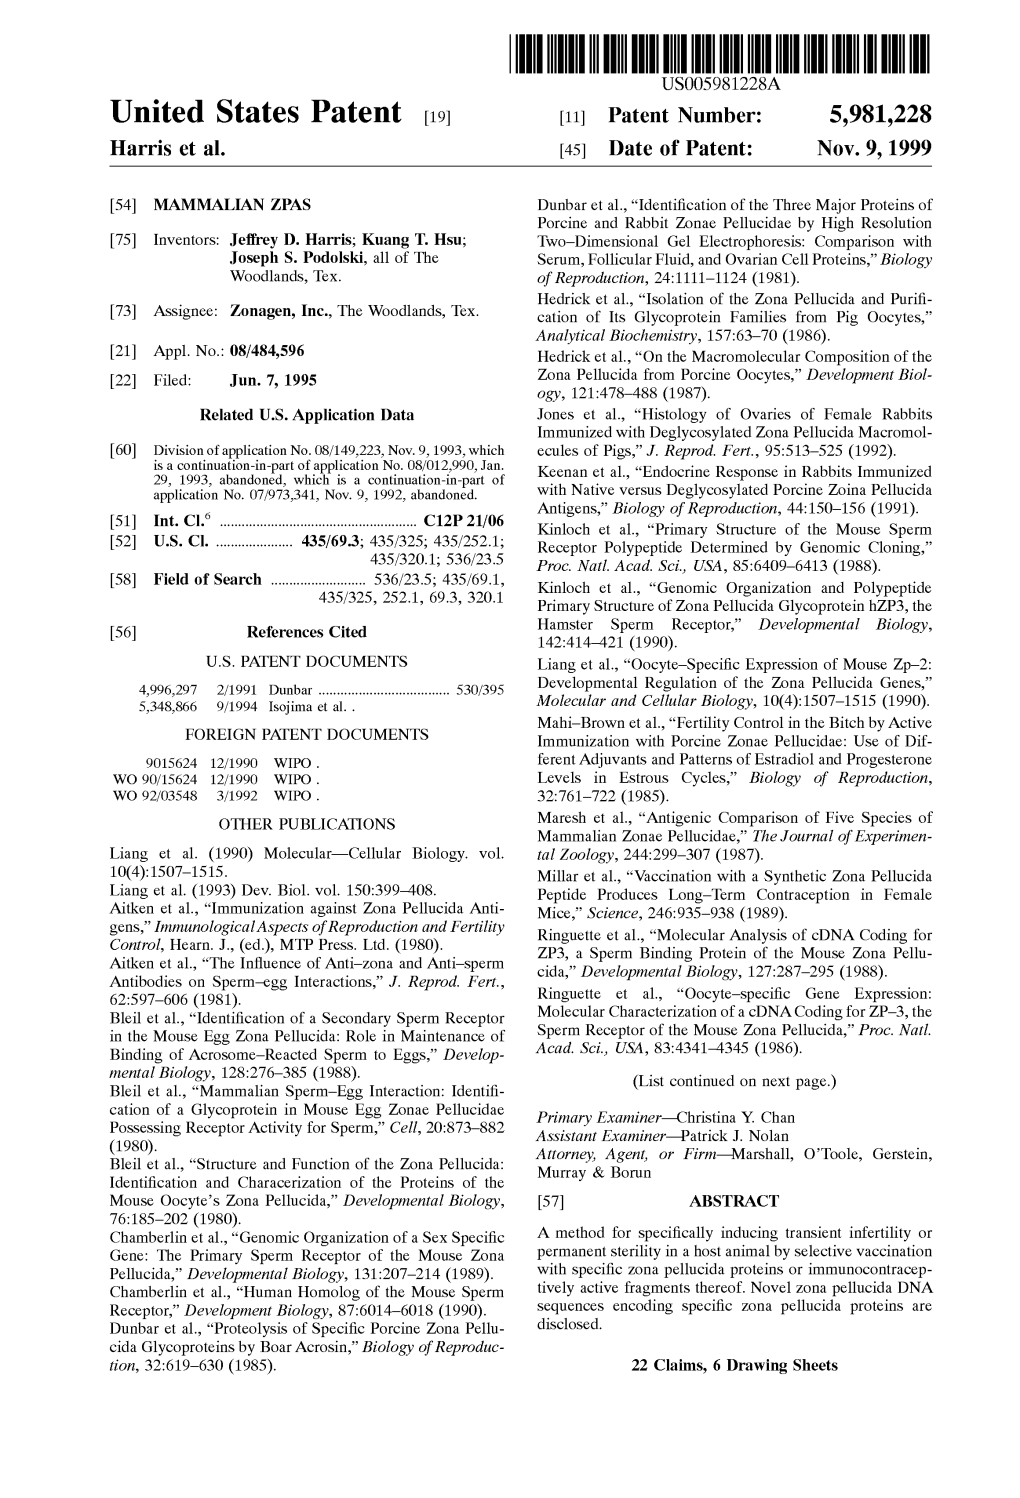 United States Patent (19) 11 Patent Number: 5,981,228 Harris Et Al